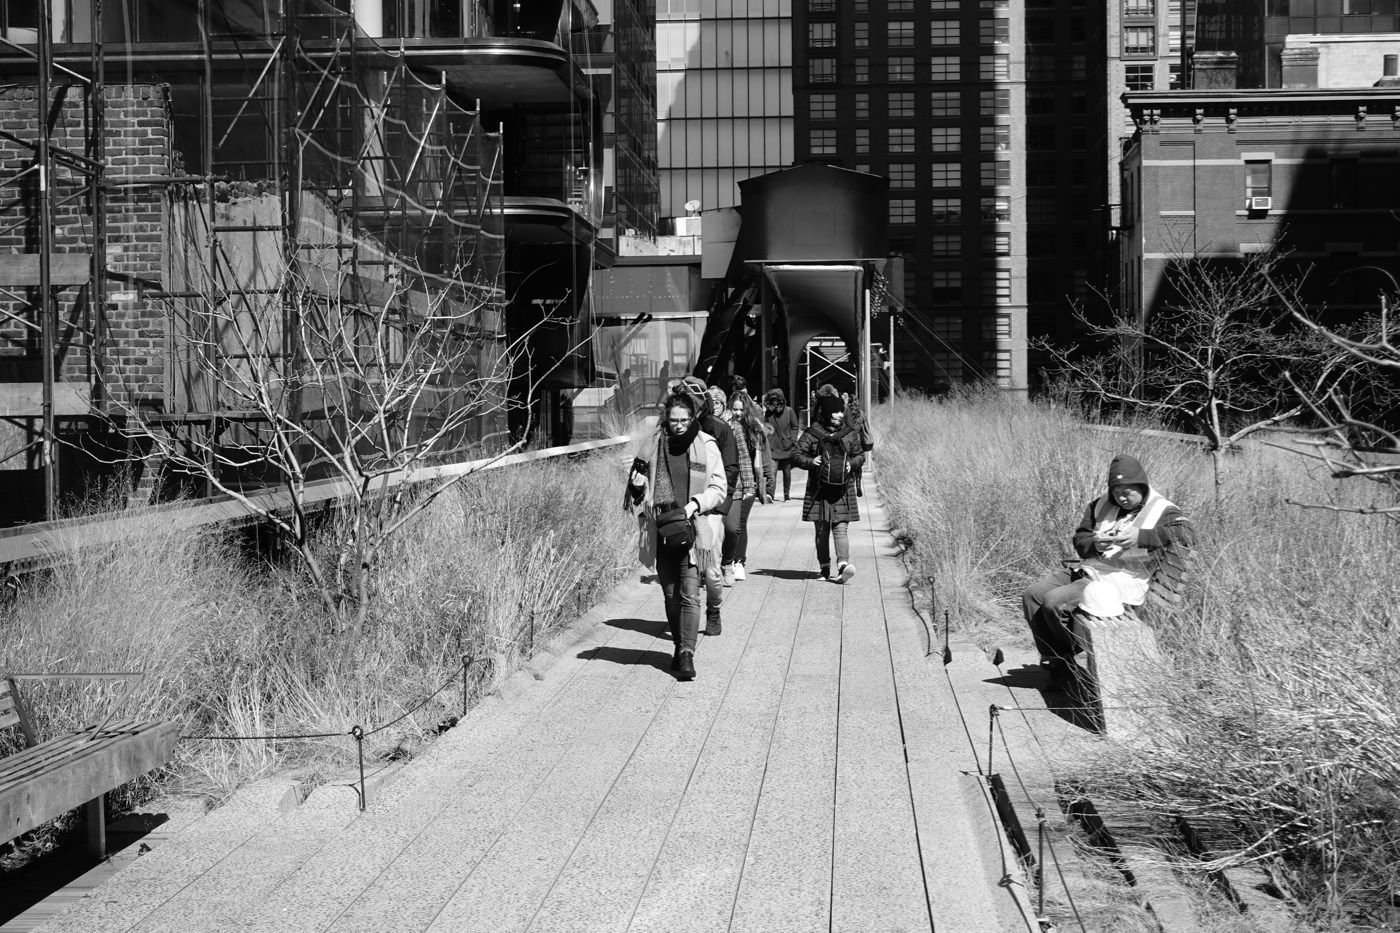 紐約景點 曼哈頓 The High Line 廢棄鐵道再生計畫 高架公園 - 一口冒險 Bitesized Adventure